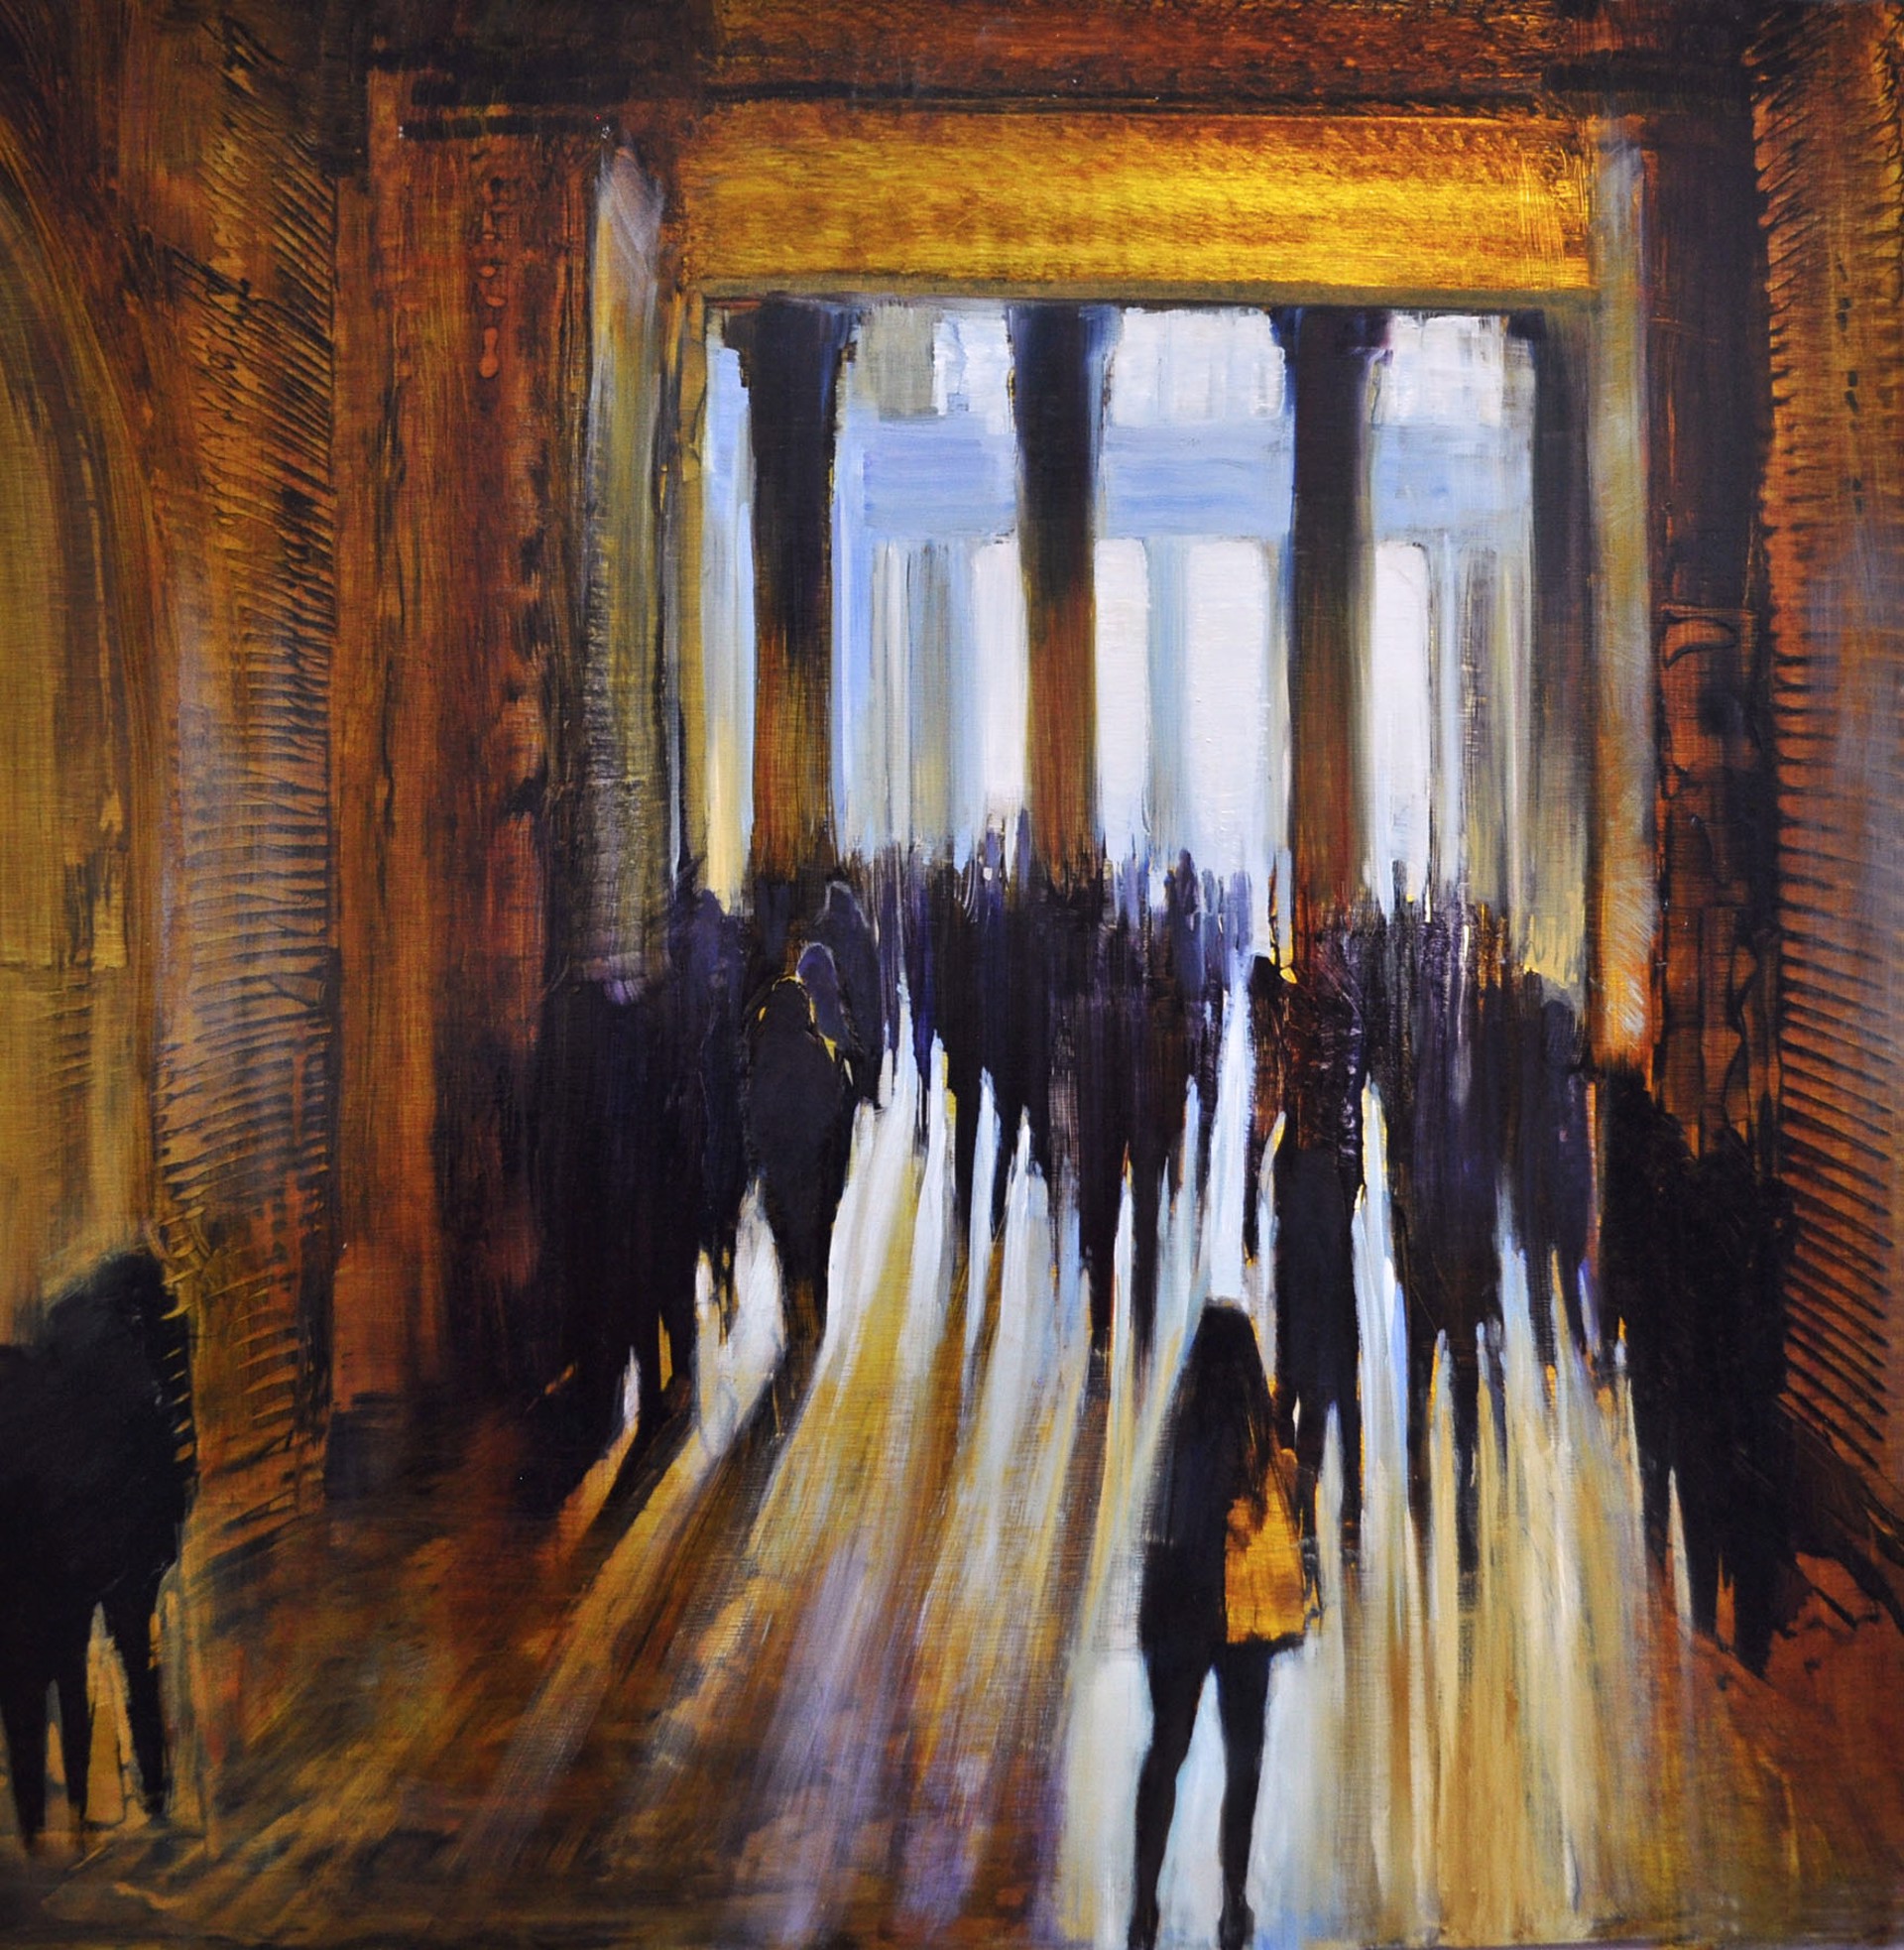 Between Columns of Light by David Dunlop